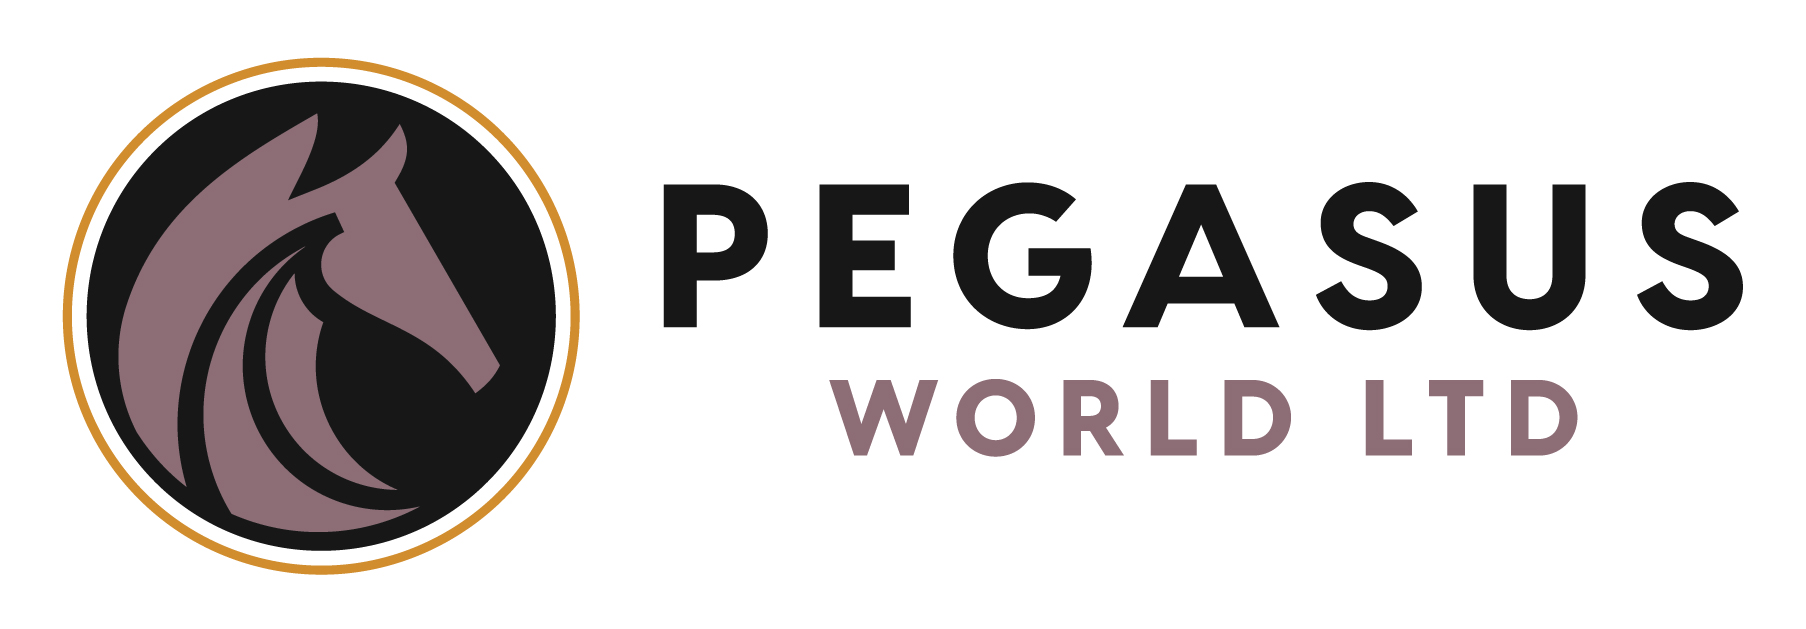 Pegasus World Ltd